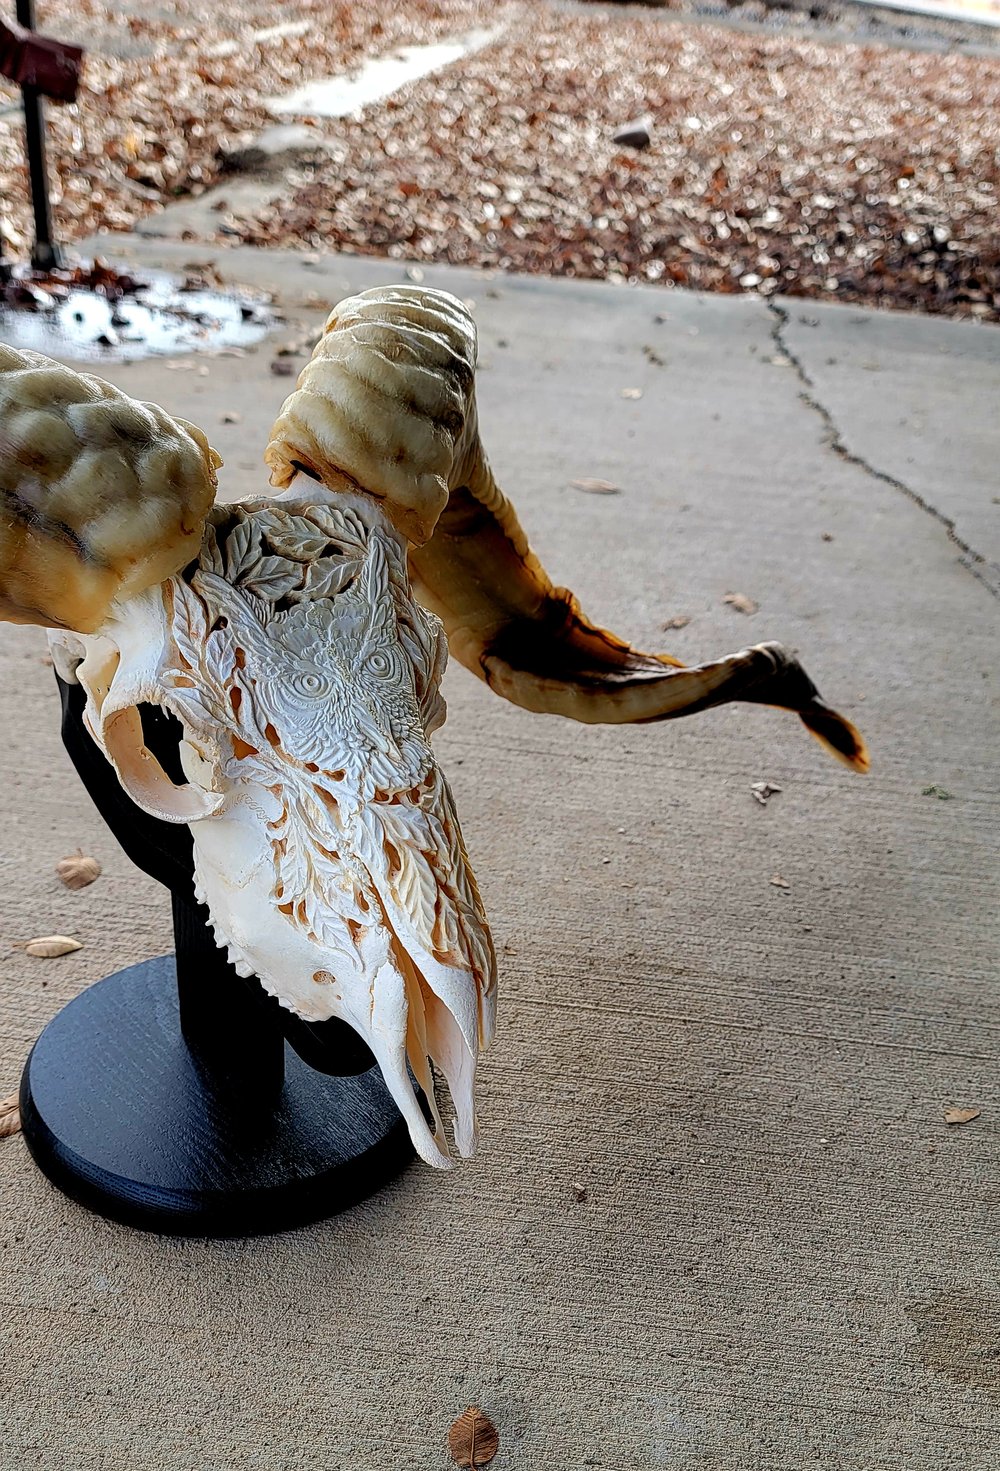 32.5" carved ram skull Owl